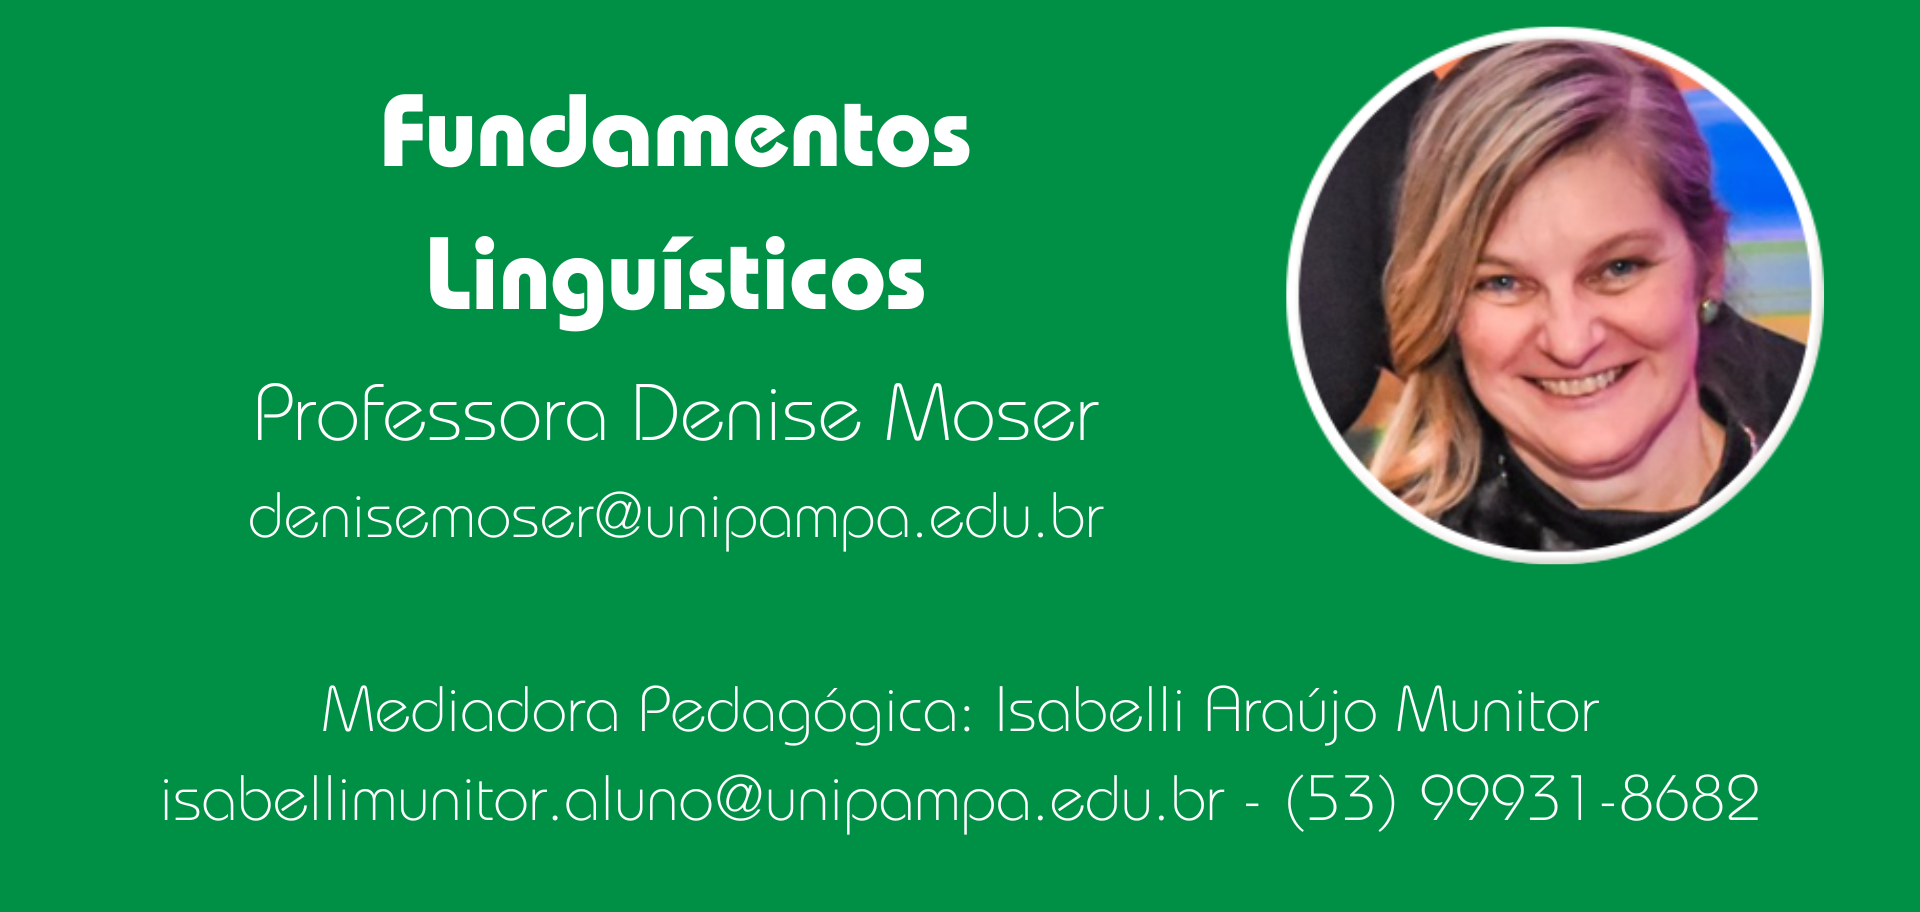 Fundamentos linguísticos Profa. Denise Moser